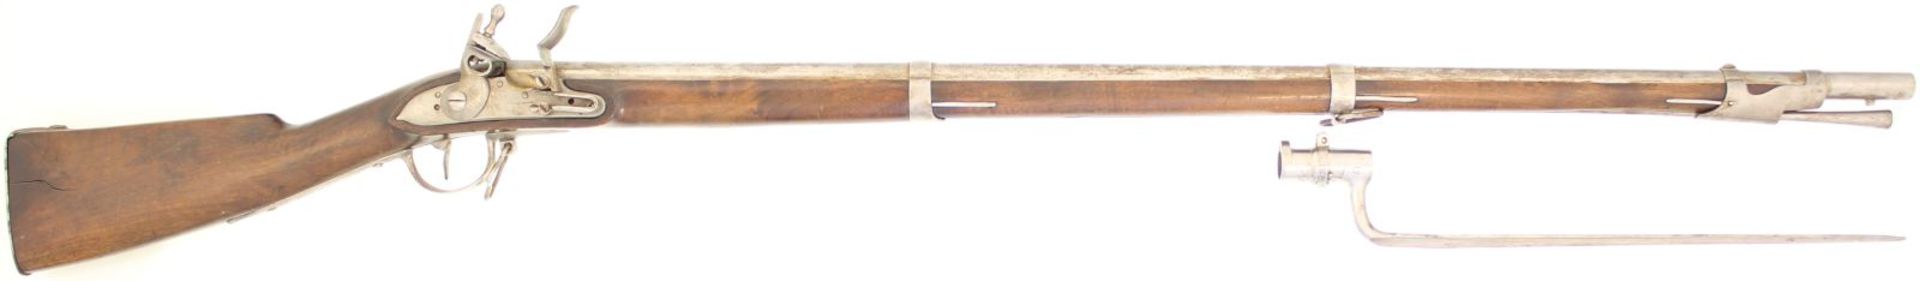 Steinschlossgewehr, Italien, in der Art Franz. Ord 1817/22, Kal. 17.6mm. Nach vorne geneigte